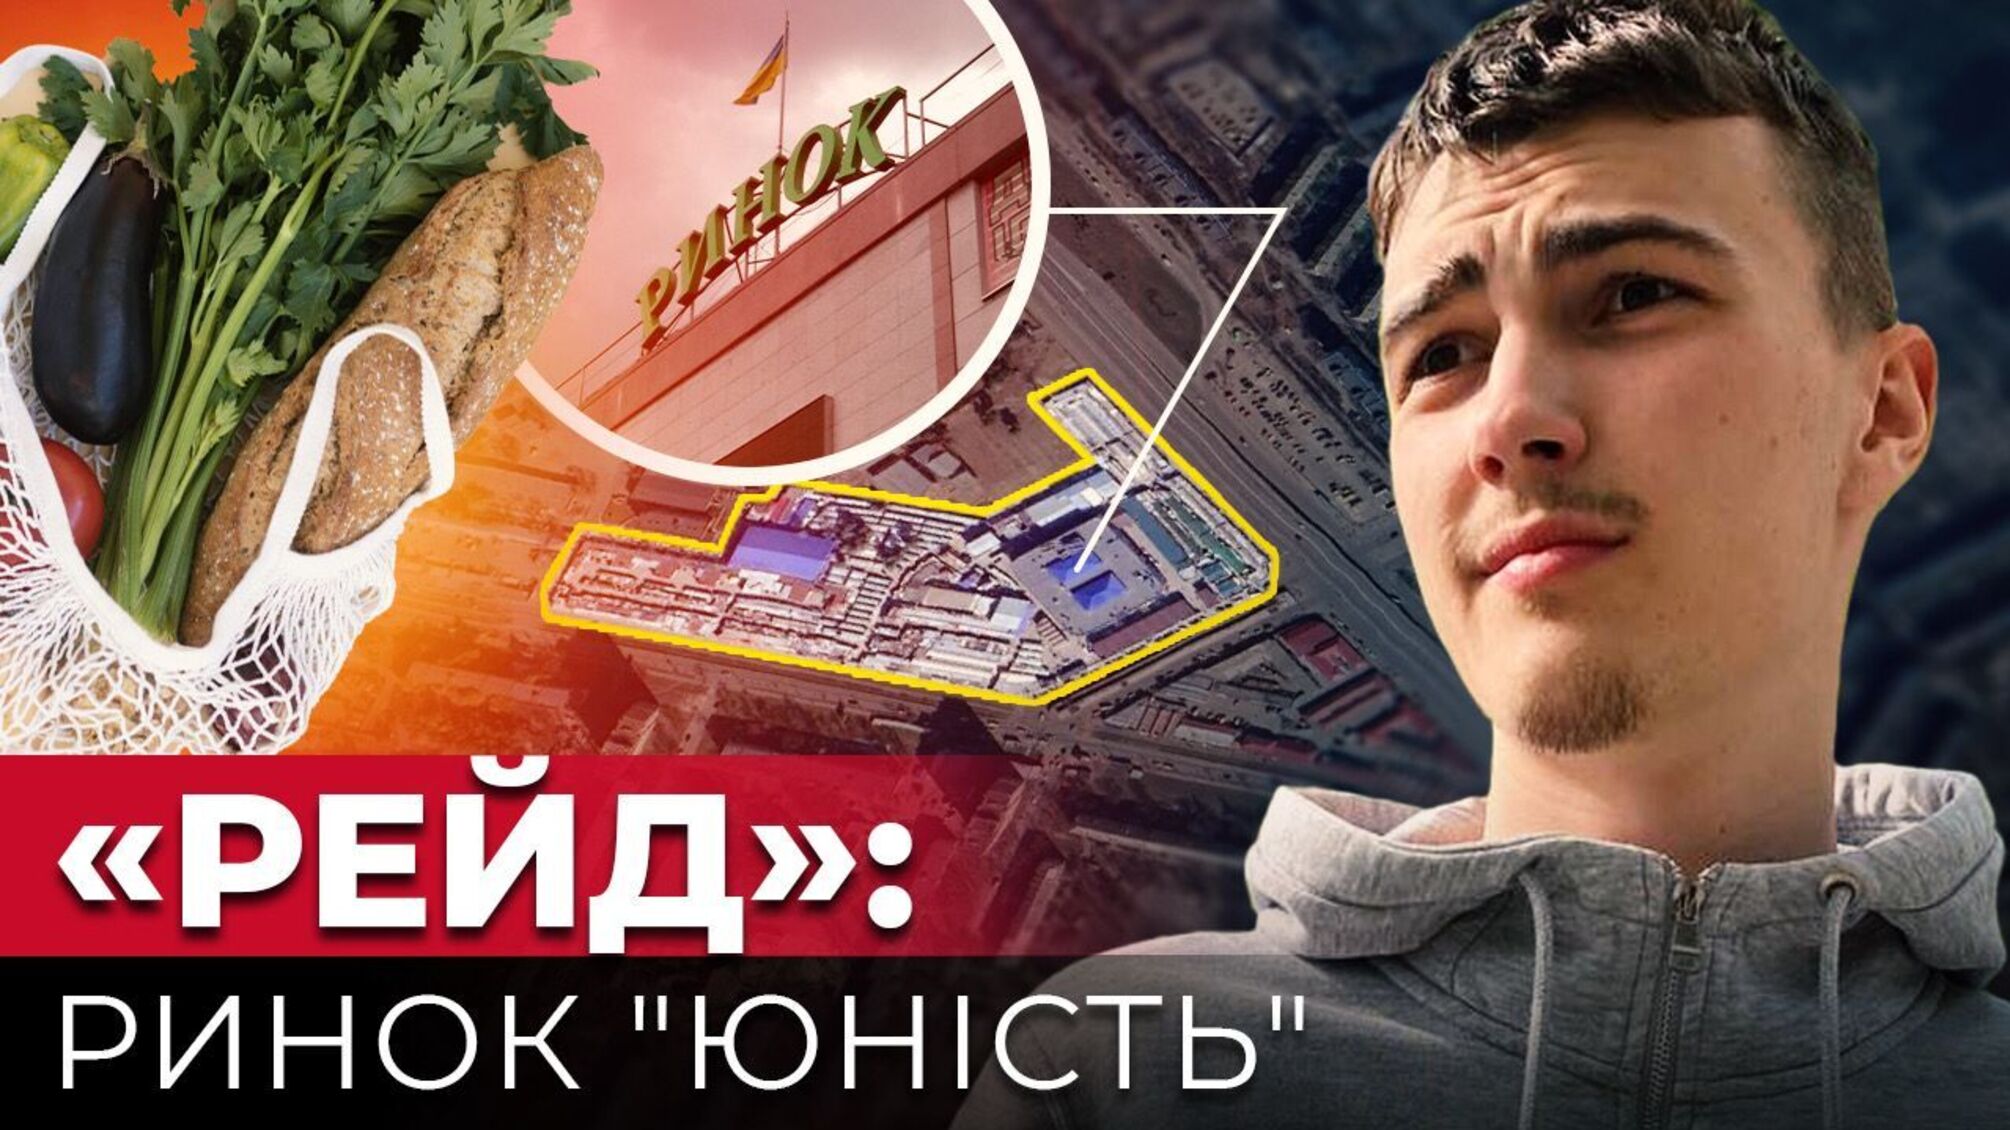 Журналисты обнаружили на рынке 'Юность' в Киеве просроченную рыбку и хамовитых продавцов